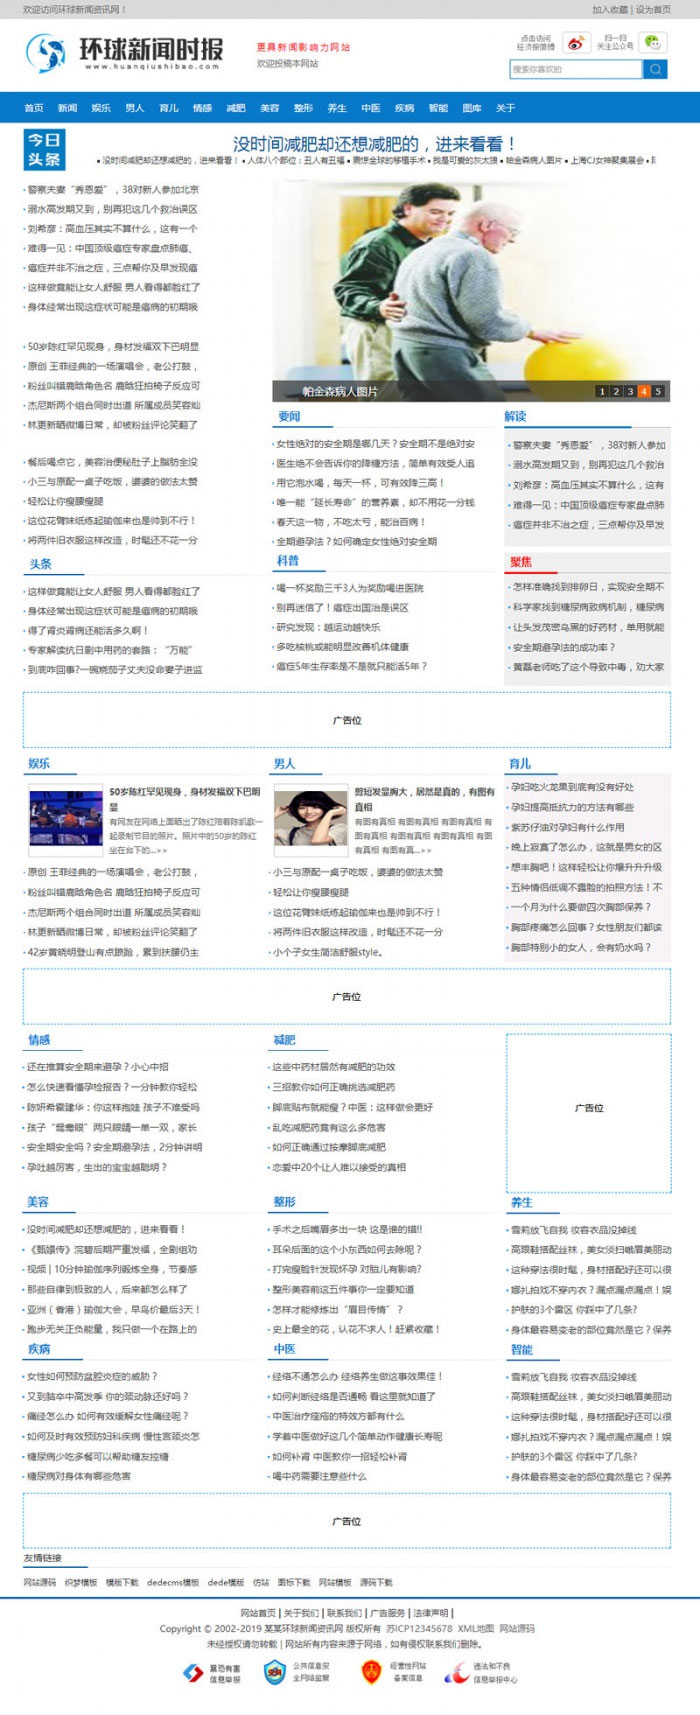 L180 织梦dedecms蓝色简洁新闻资讯门户网站模板(带手机移动端)